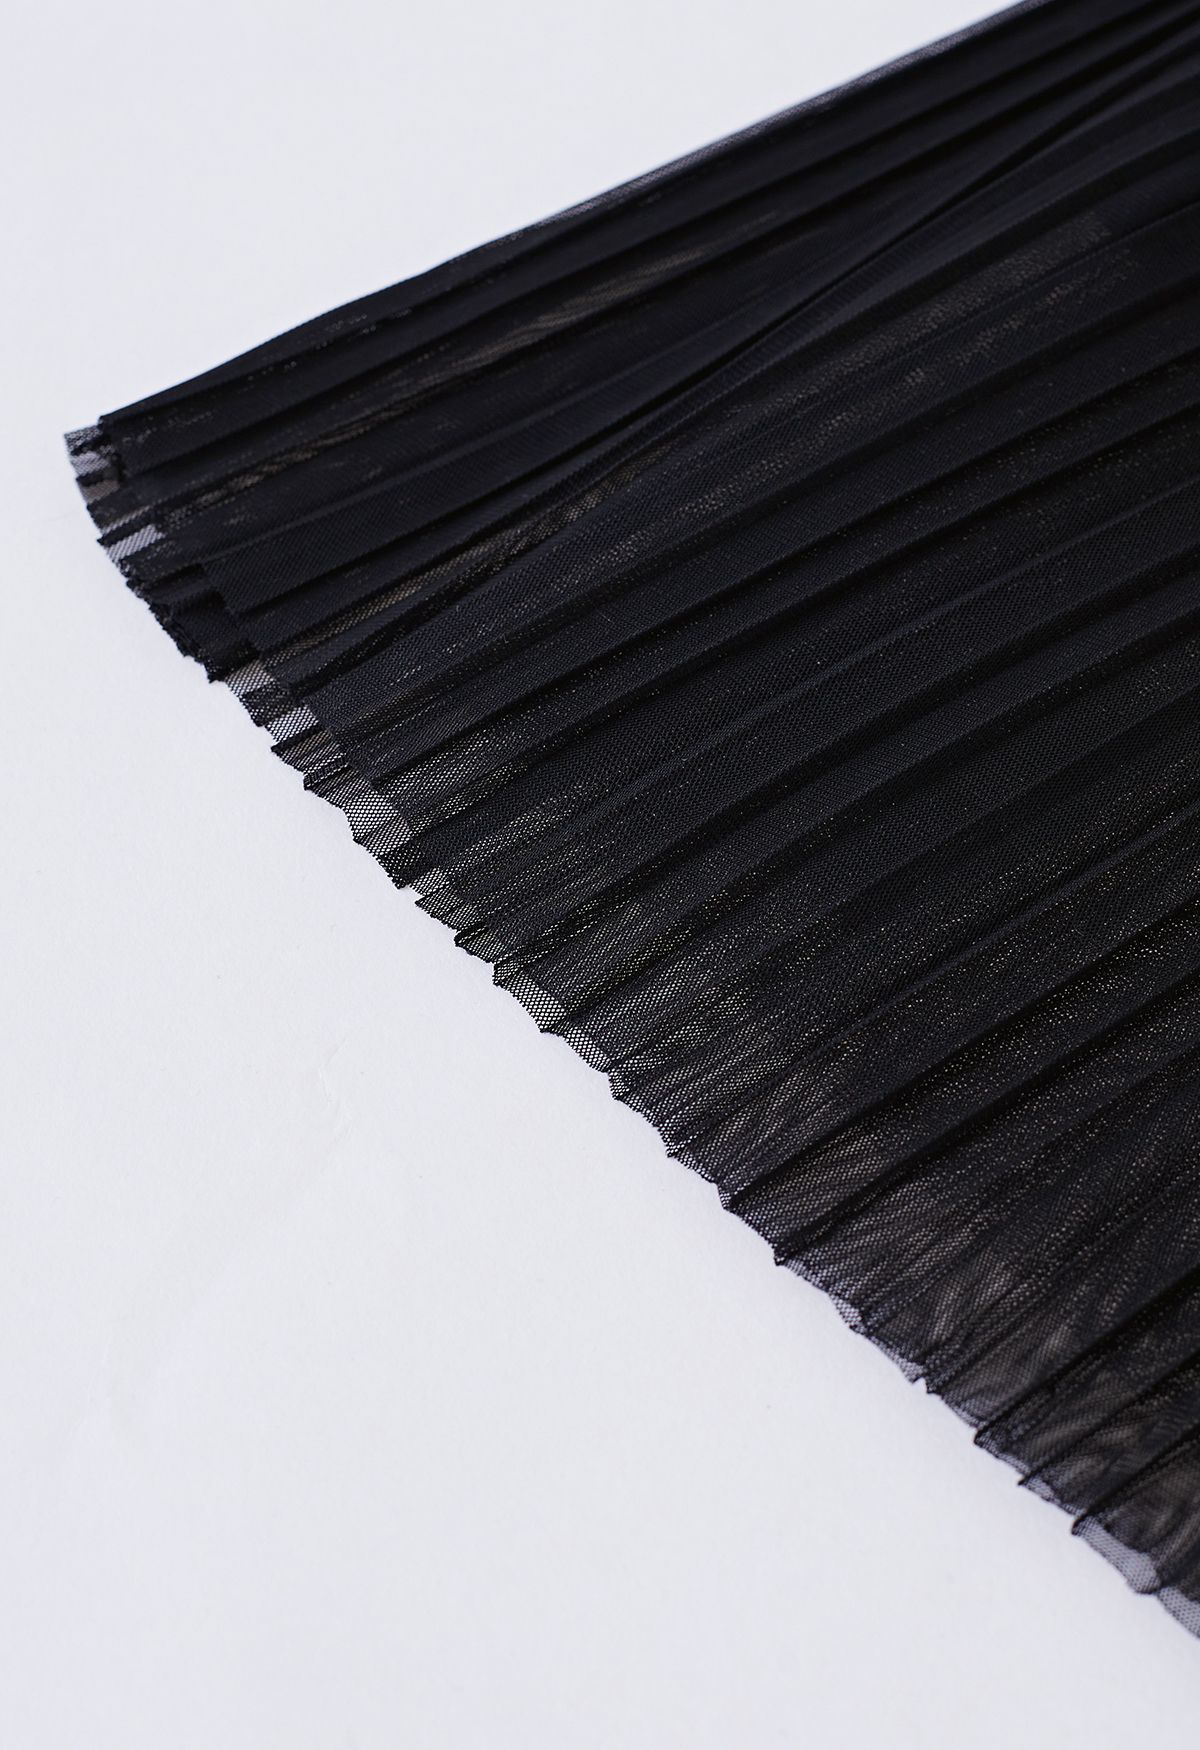 Falda de tul de malla de doble capa plisada en negro